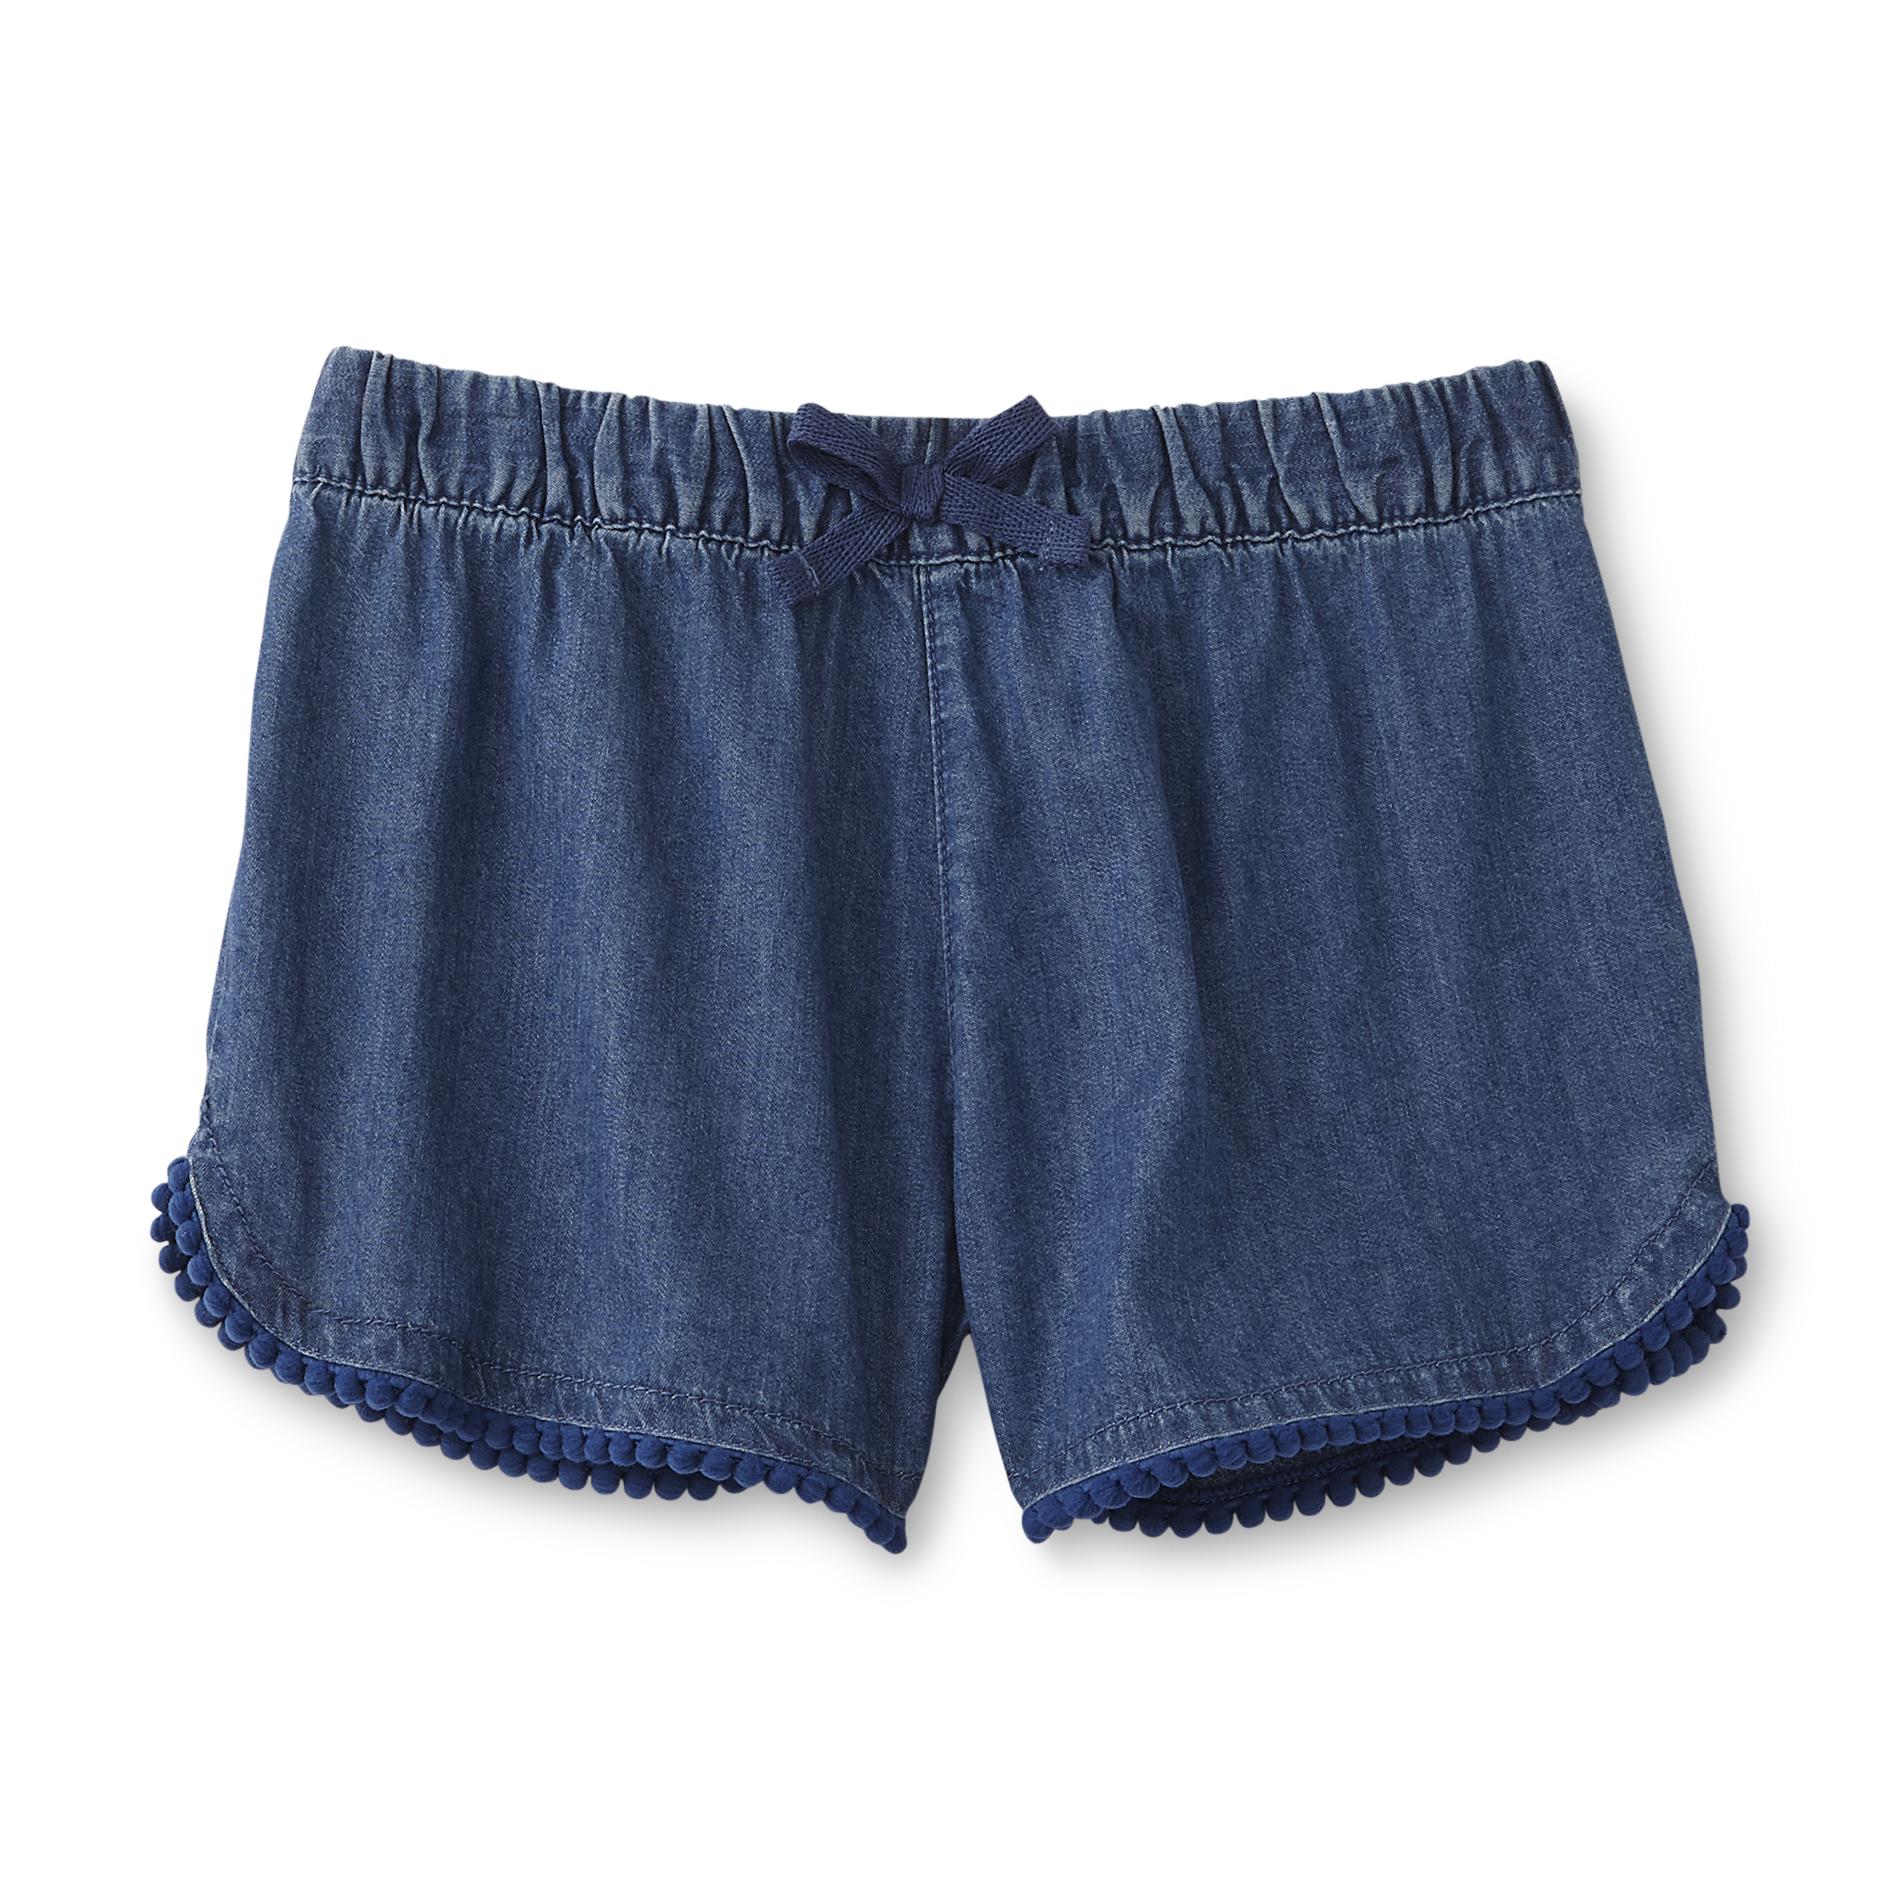 Toughskins Infant & Toddler Girl's Denim Shorts